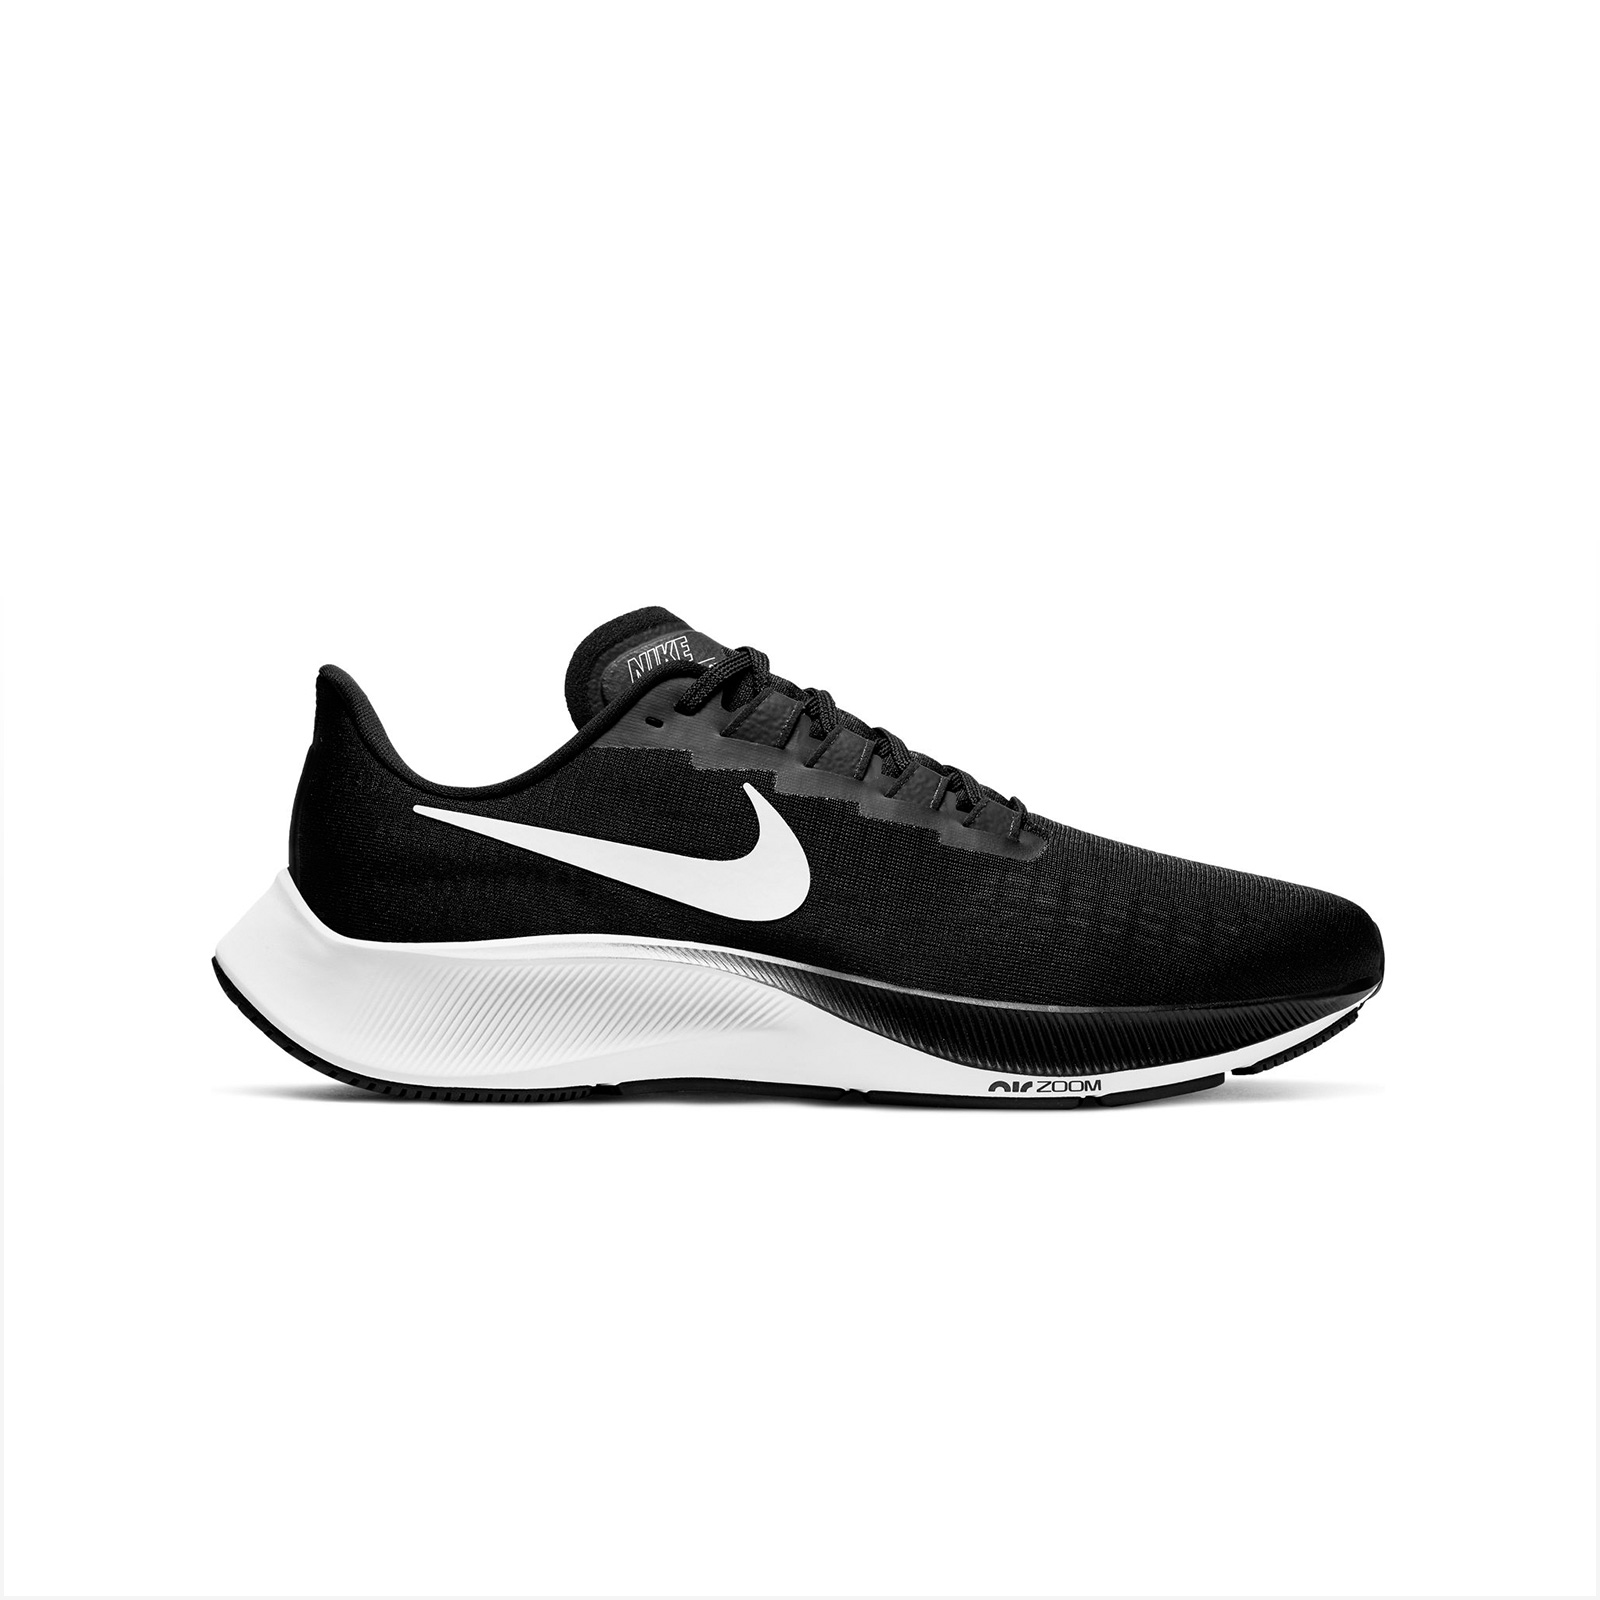 Ανδρικά > Παπούτσια > Αθλητικά > Παπούτσι Low Cut Nike - NIKE AIR ZOOM PEGASUS 37 - BLACK/WHITE